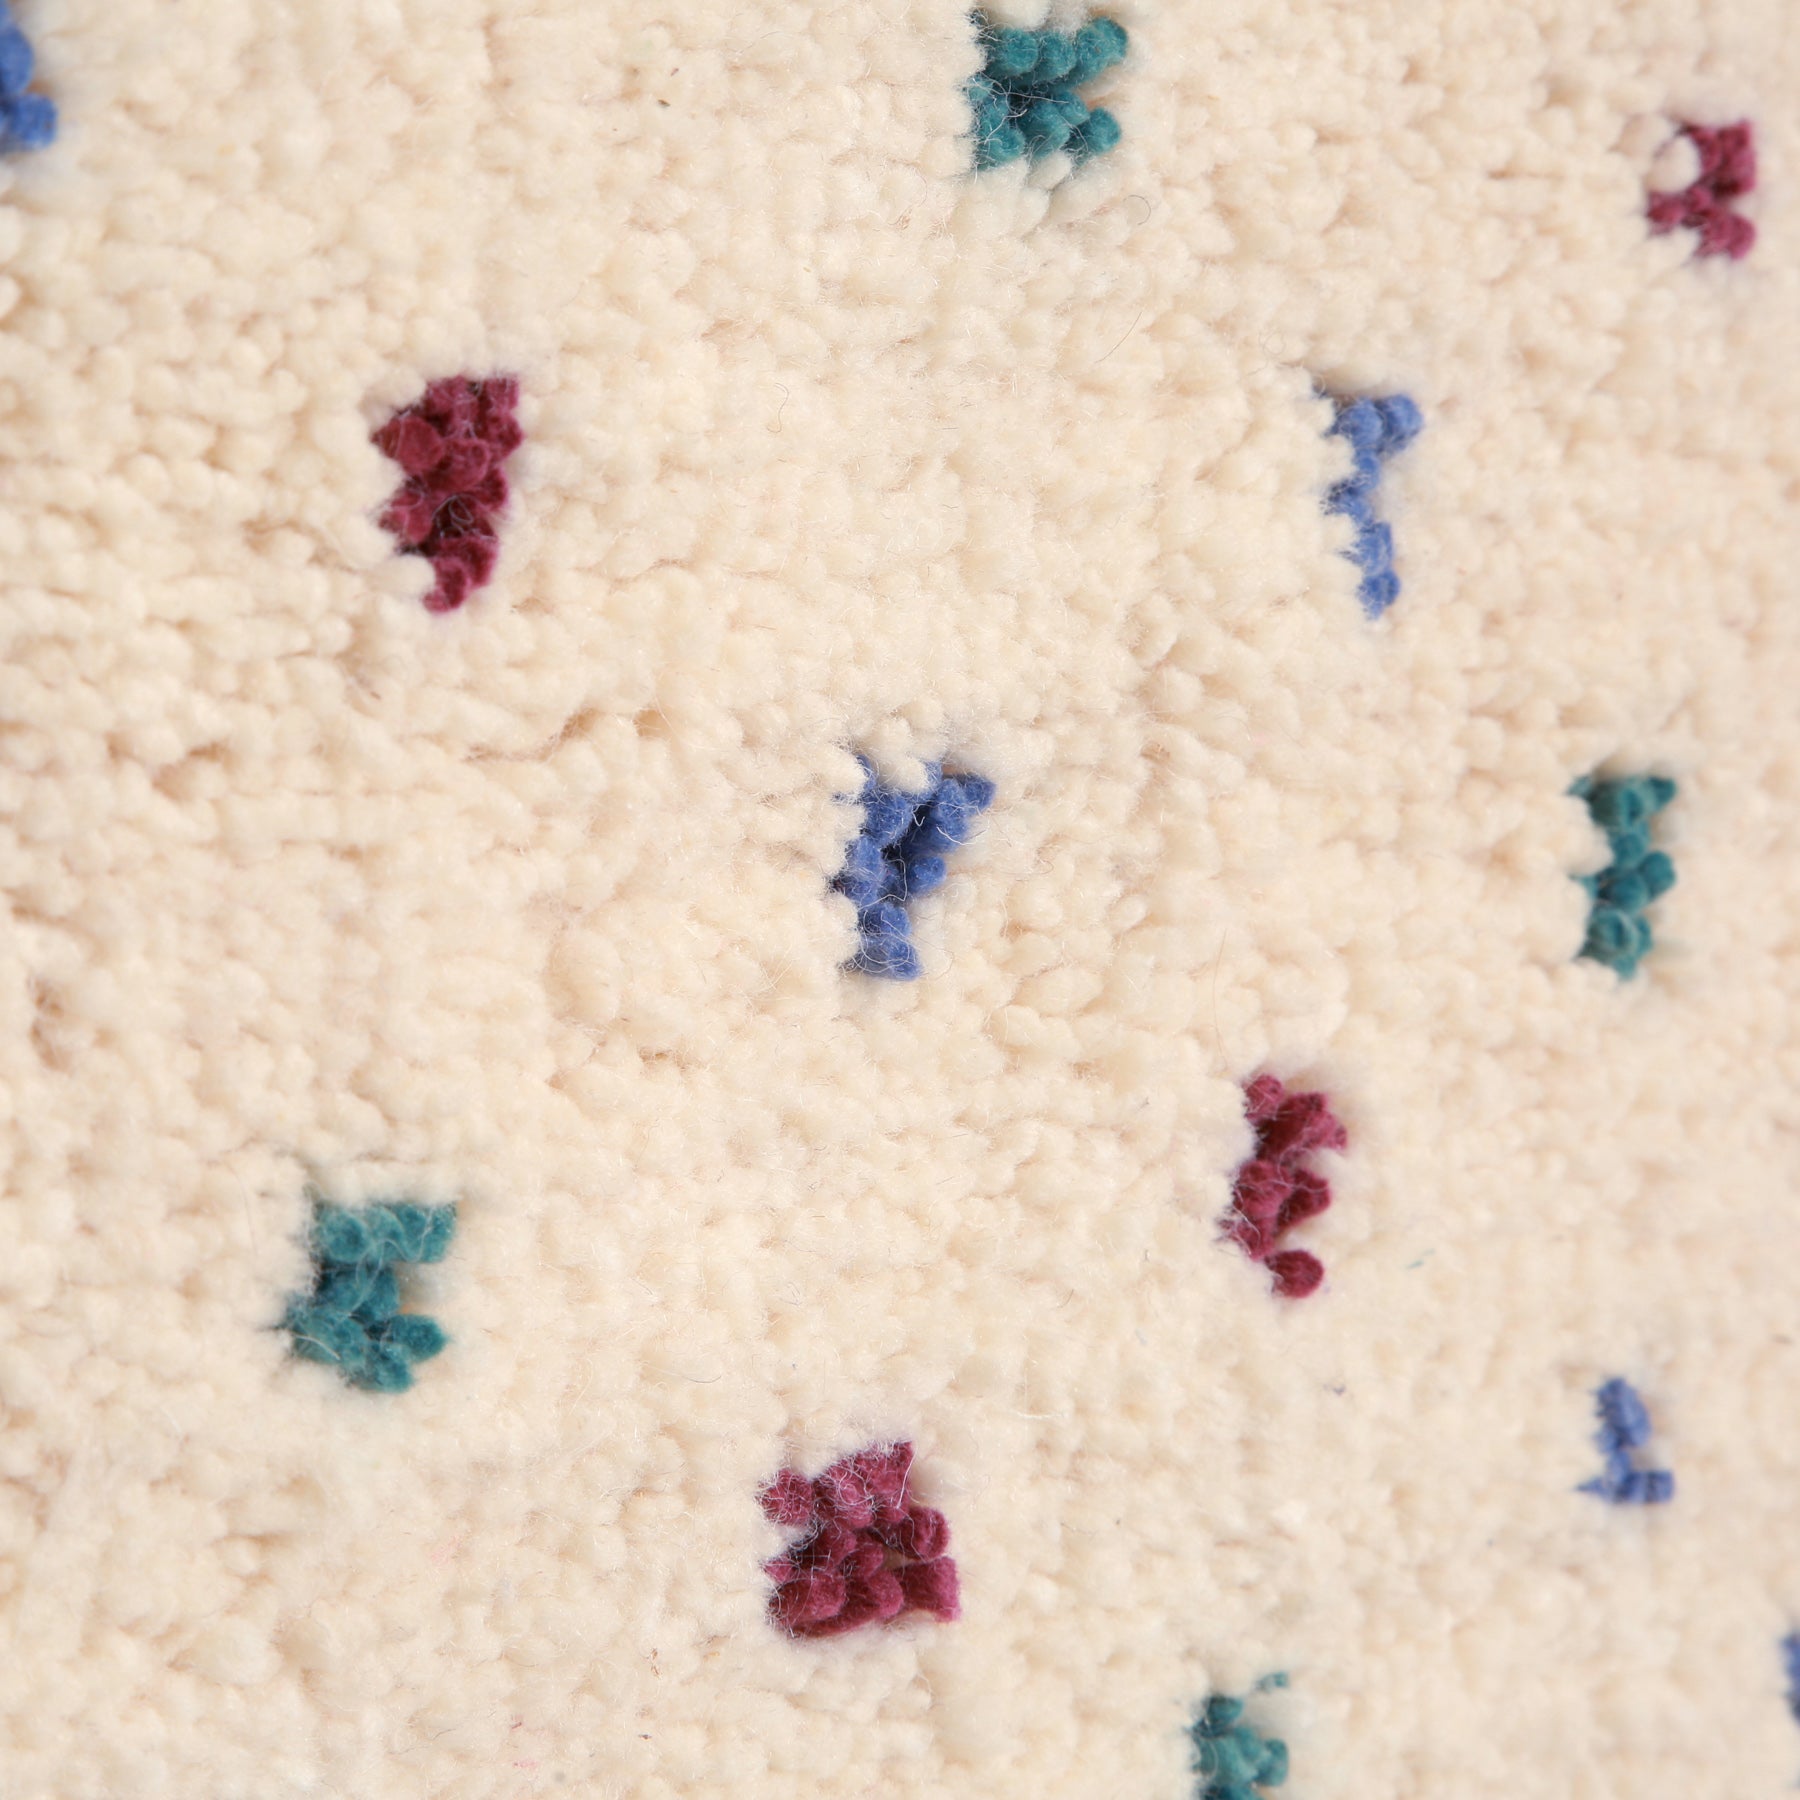 dettaglio della lana avorio e dei poi color pastello di un tappeto